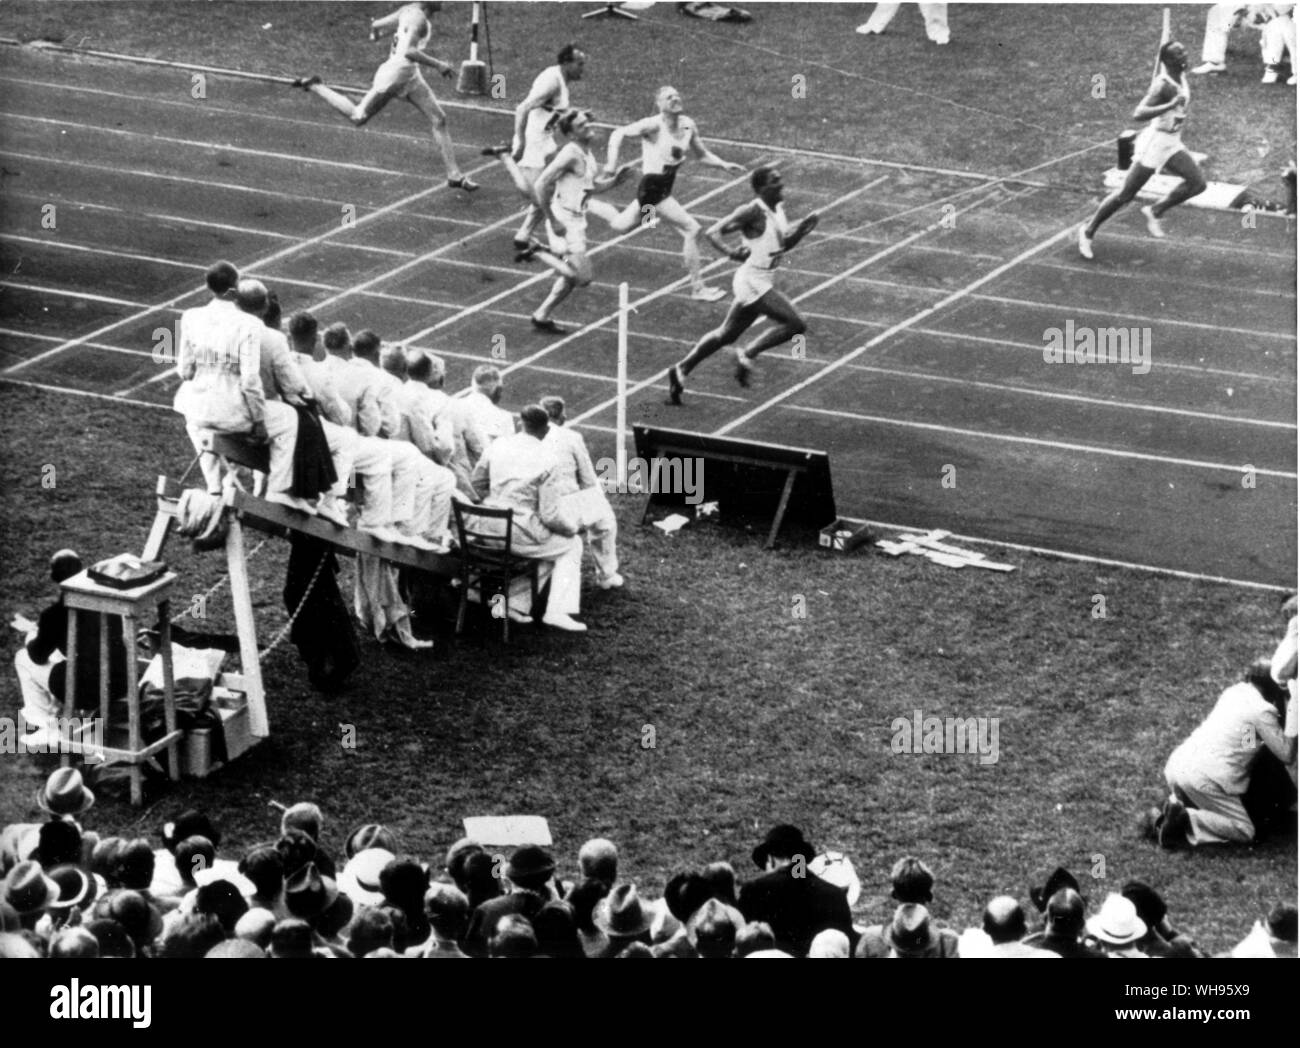 Juges siégeant dans la ligne fini Berlin 1936 Jeux Olympiques Banque D'Images